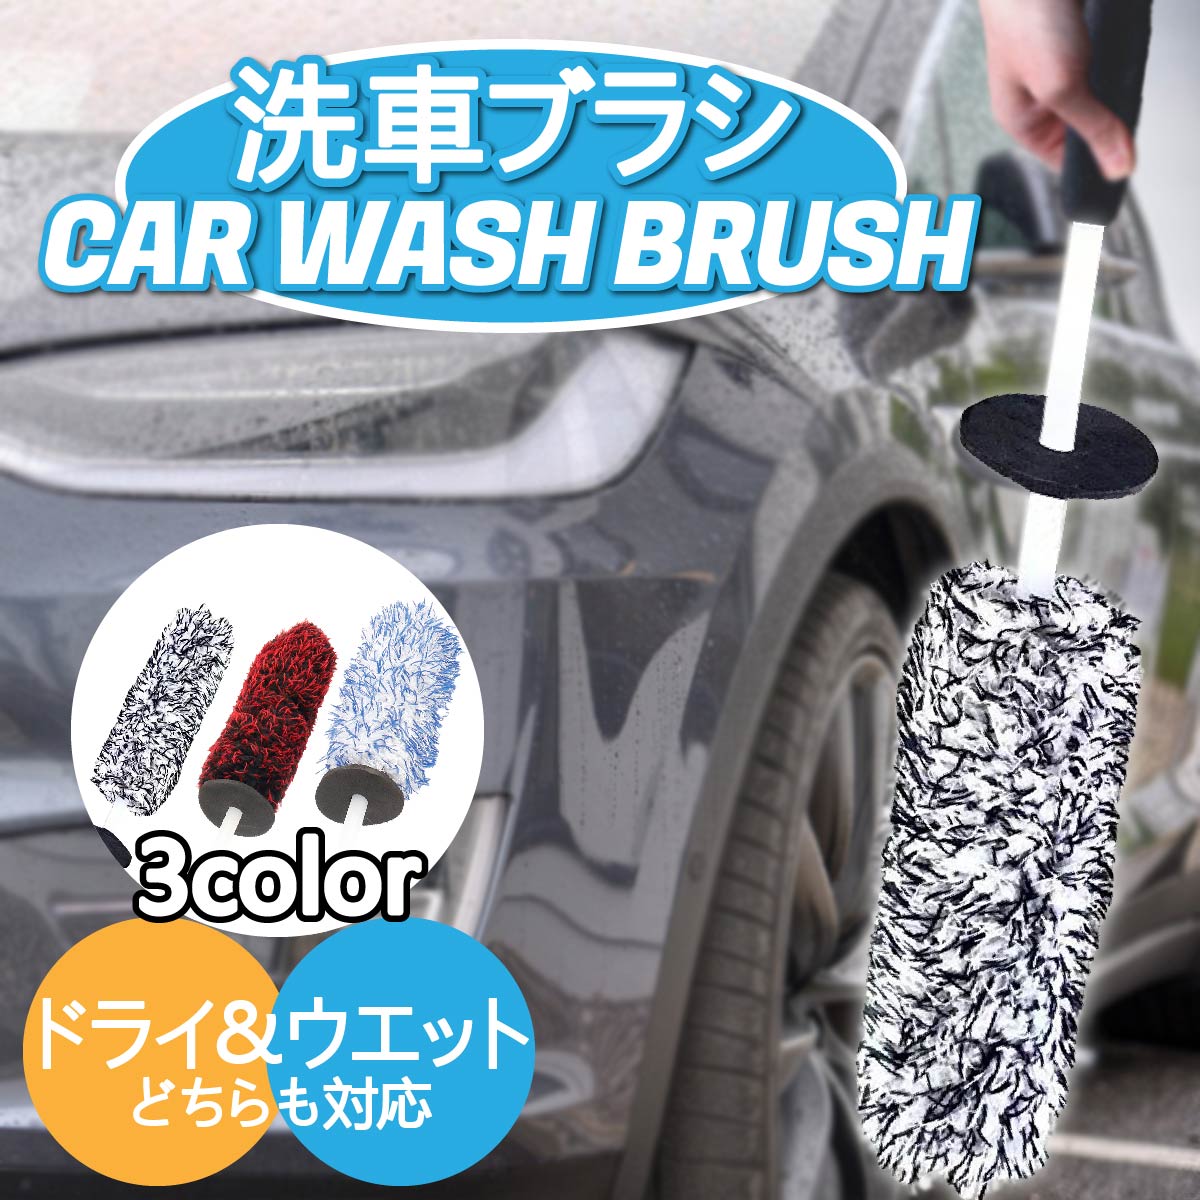 洗車モップ 洗車ブラシ 車用品 カー用品 洗車用品 洗車道具 洗車グッズ 